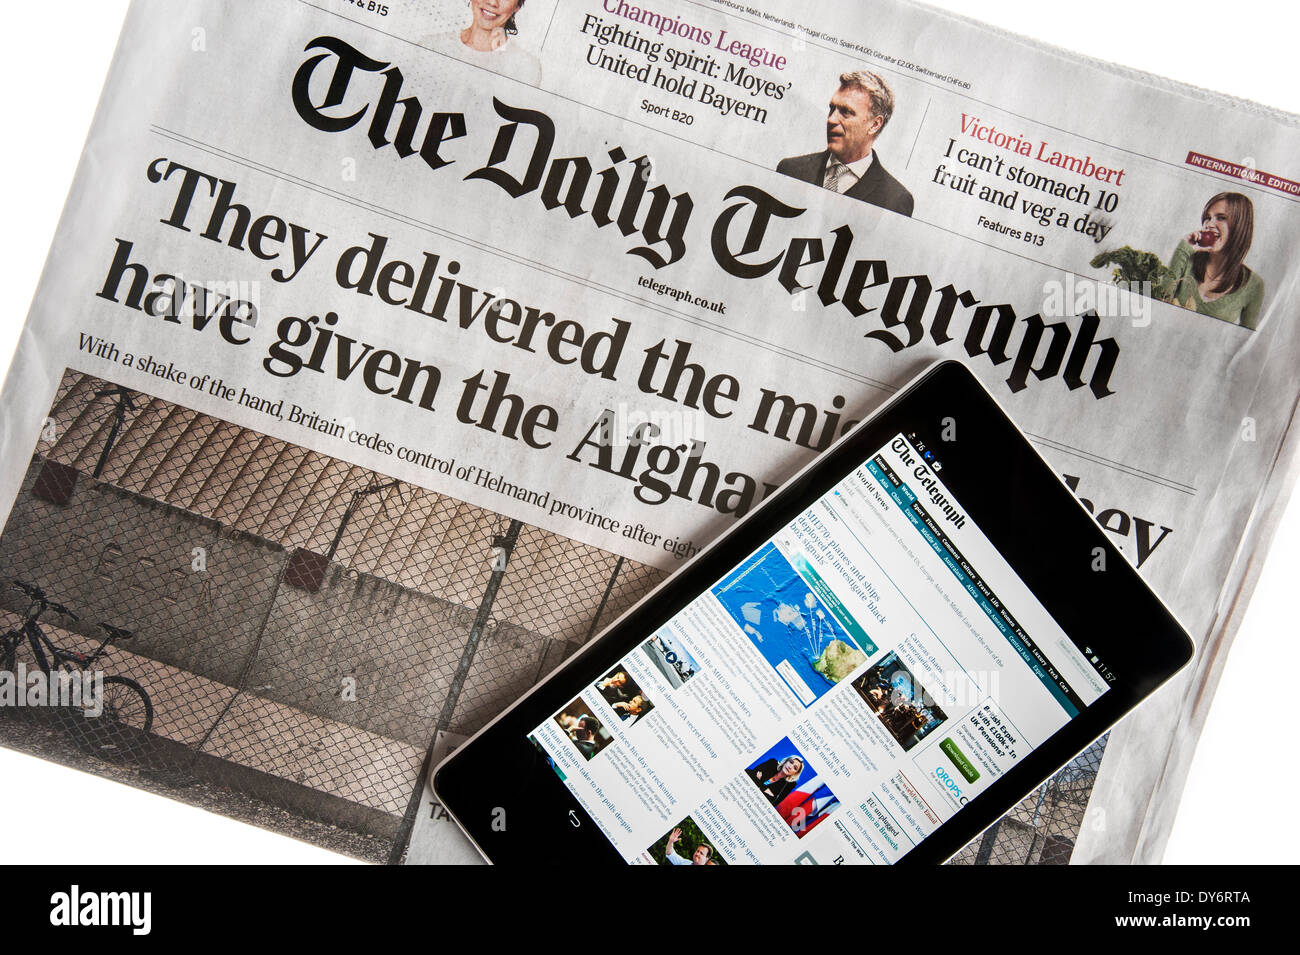 Digital Touchscreen-Tablet Online-Welt-Anzeige auf der Oberseite britischen Daily Telegraph Zeitung auf weißem Hintergrund Stockfoto